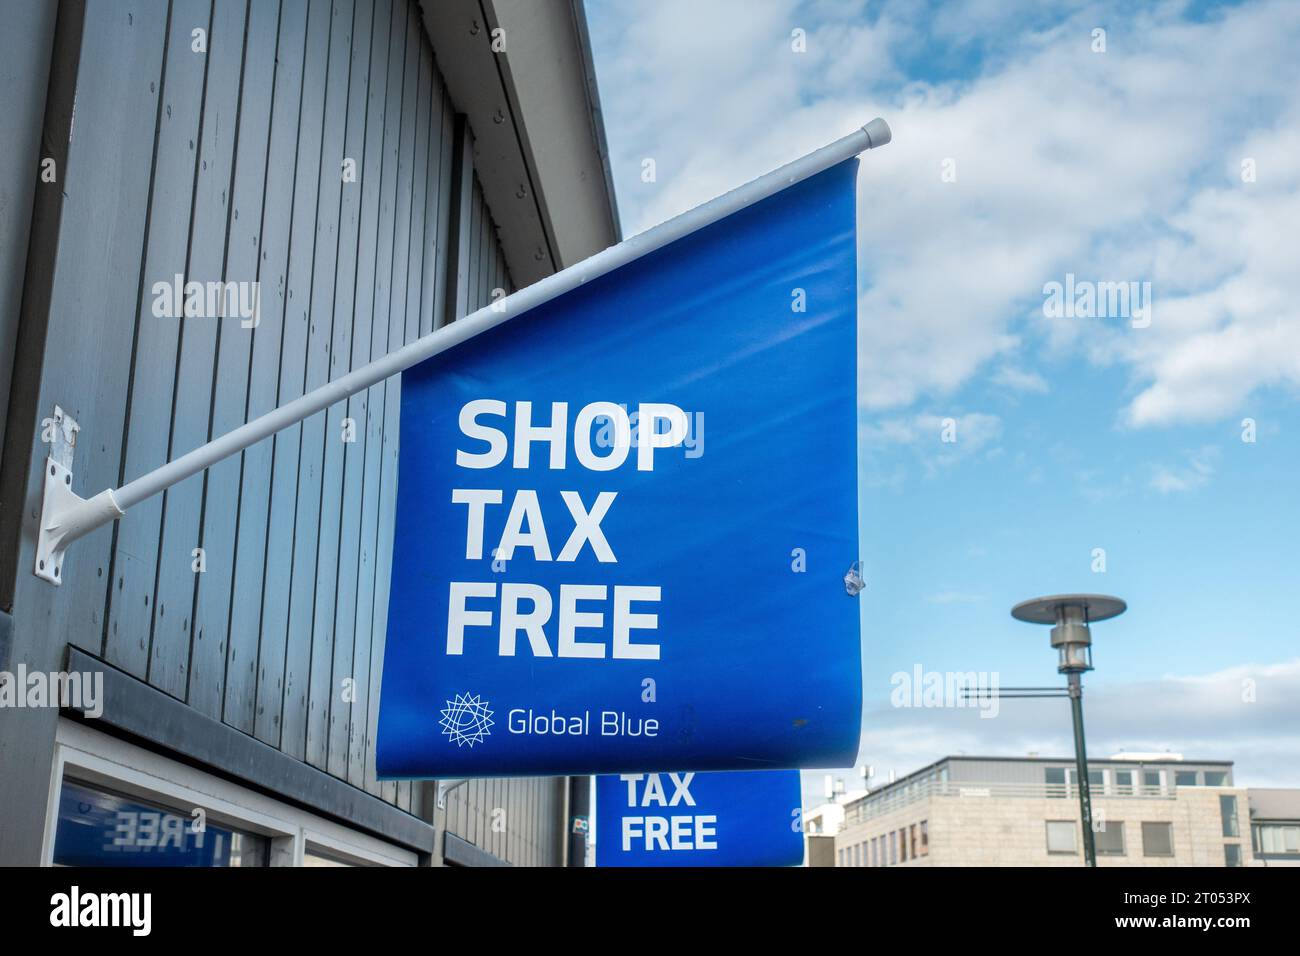 Shop Tax Free Flag Sign à l'extérieur D'Une boutique touristique à Reykjavik Islande Global Blue Tourism Shopping Tax Refund Company Banque D'Images